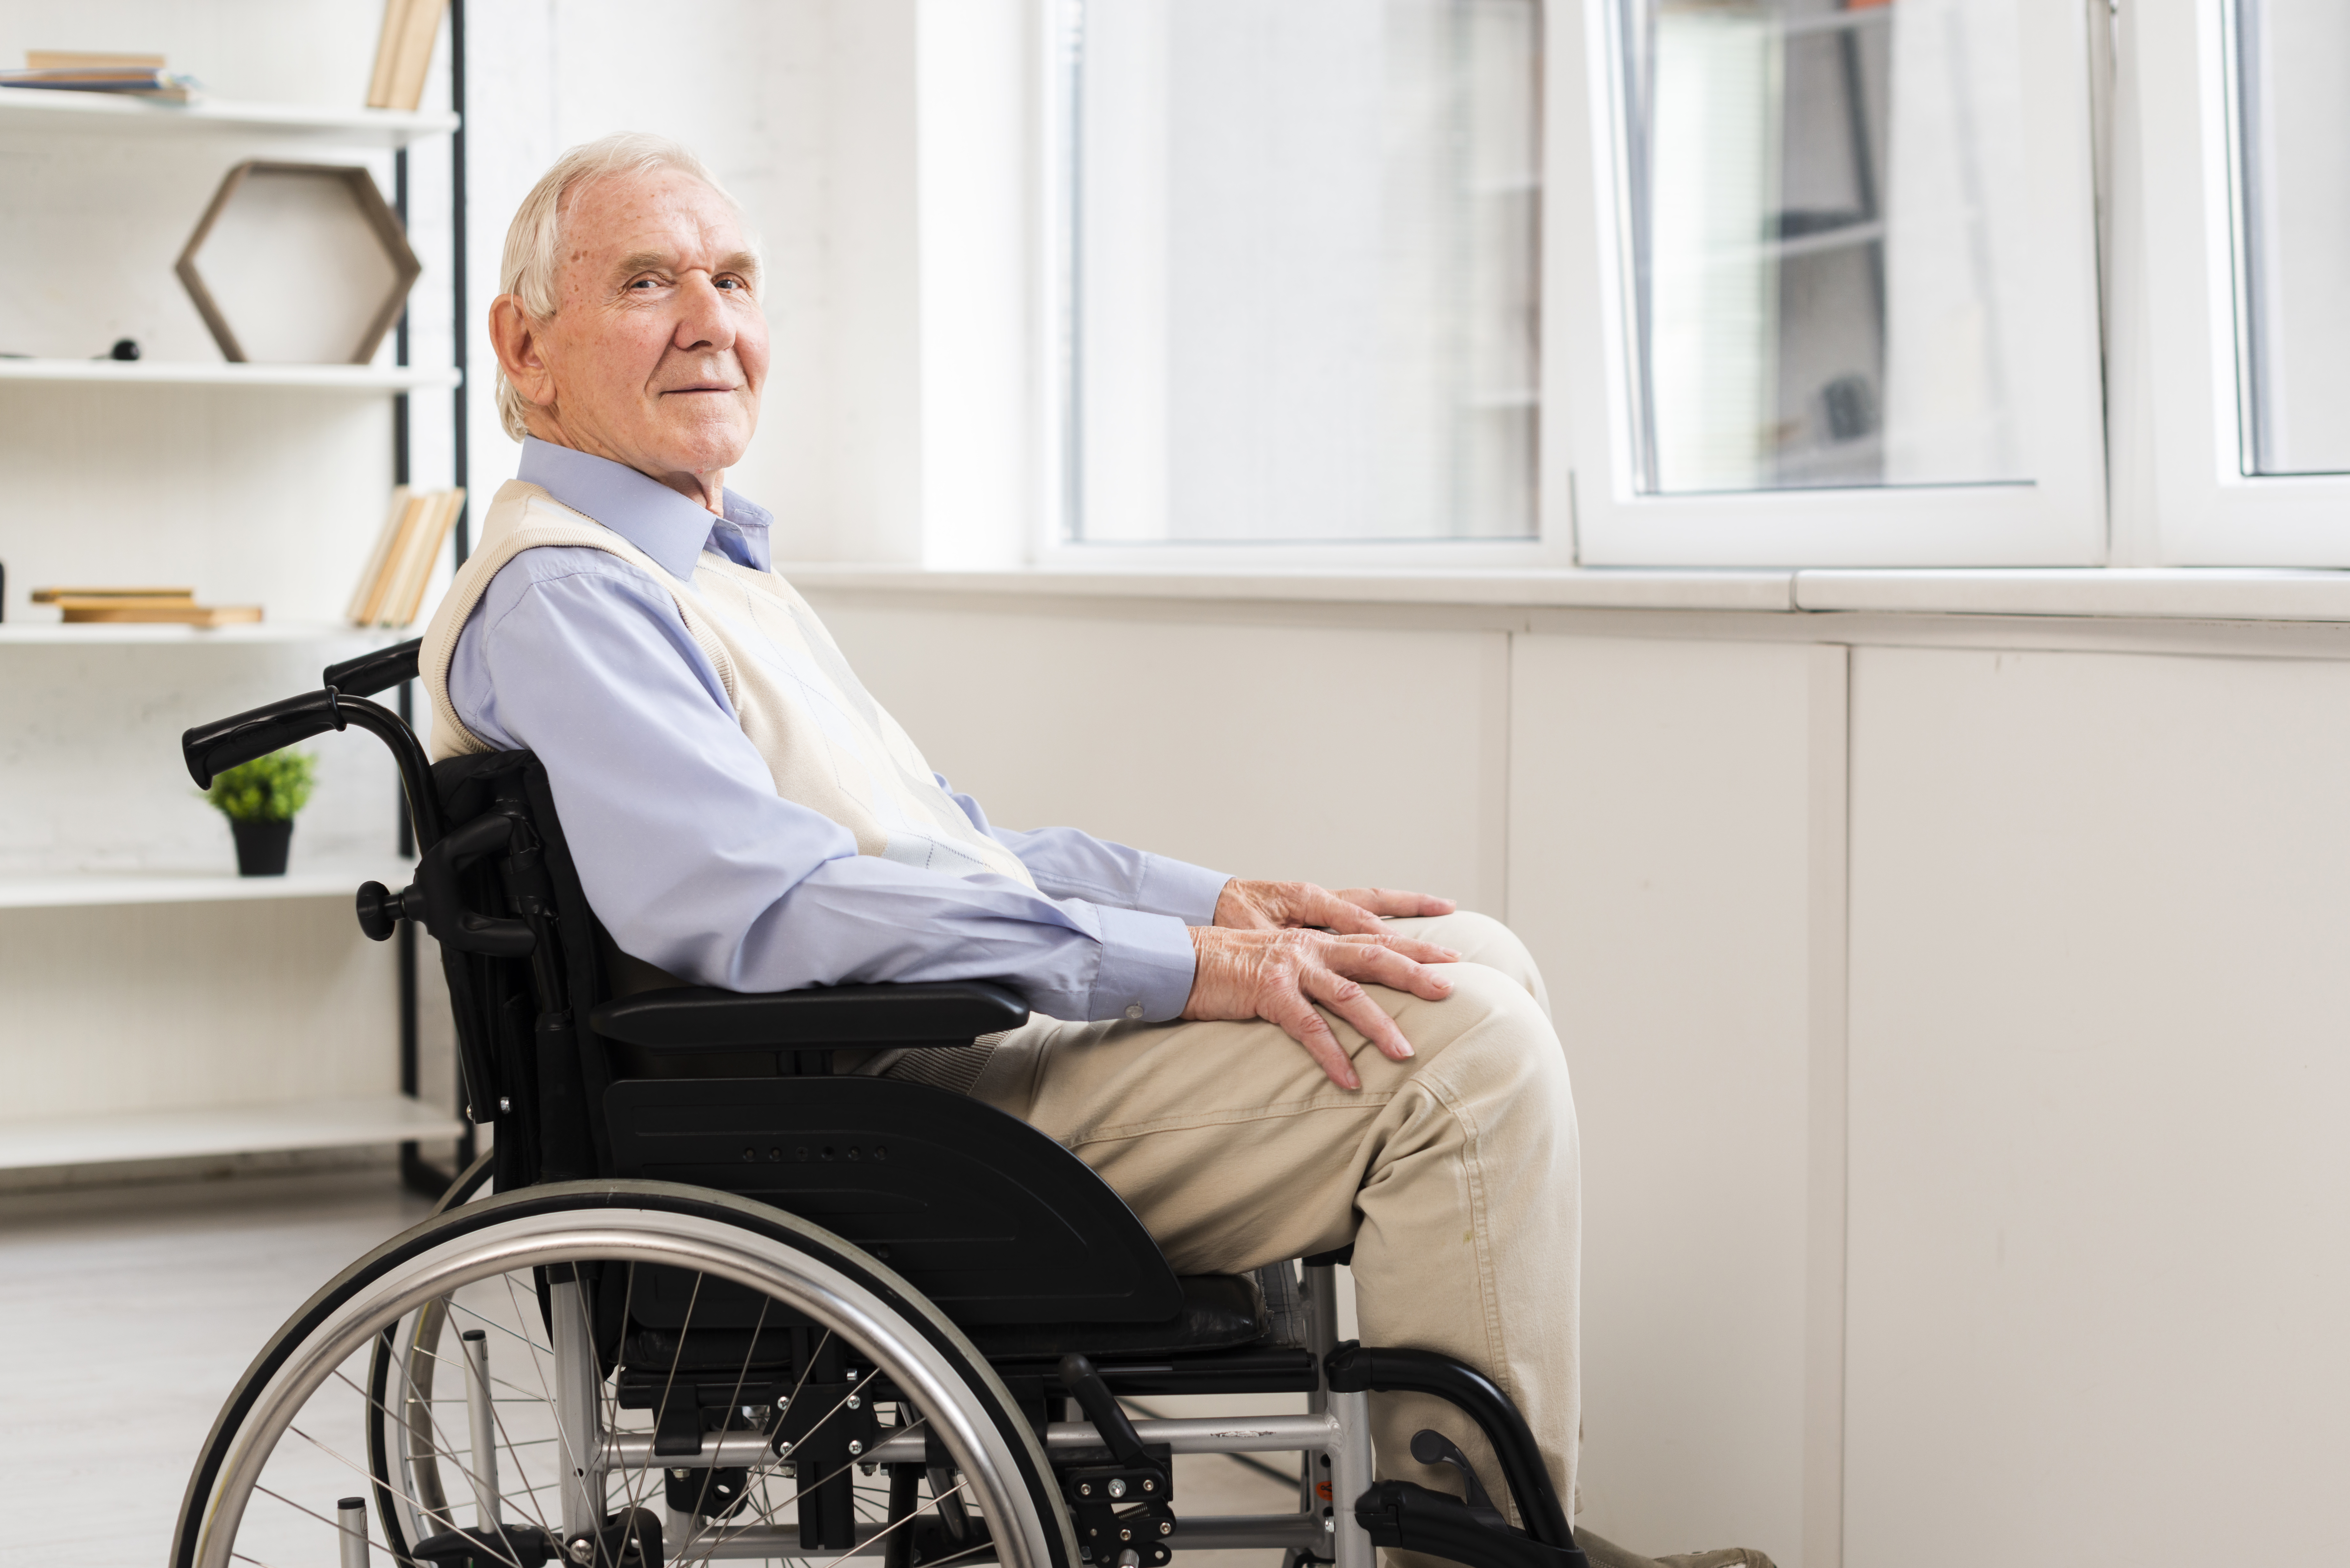 πλάγια όψη-ηλικιωμένος-καθισμένος-αναπηρικό καροτσάκι